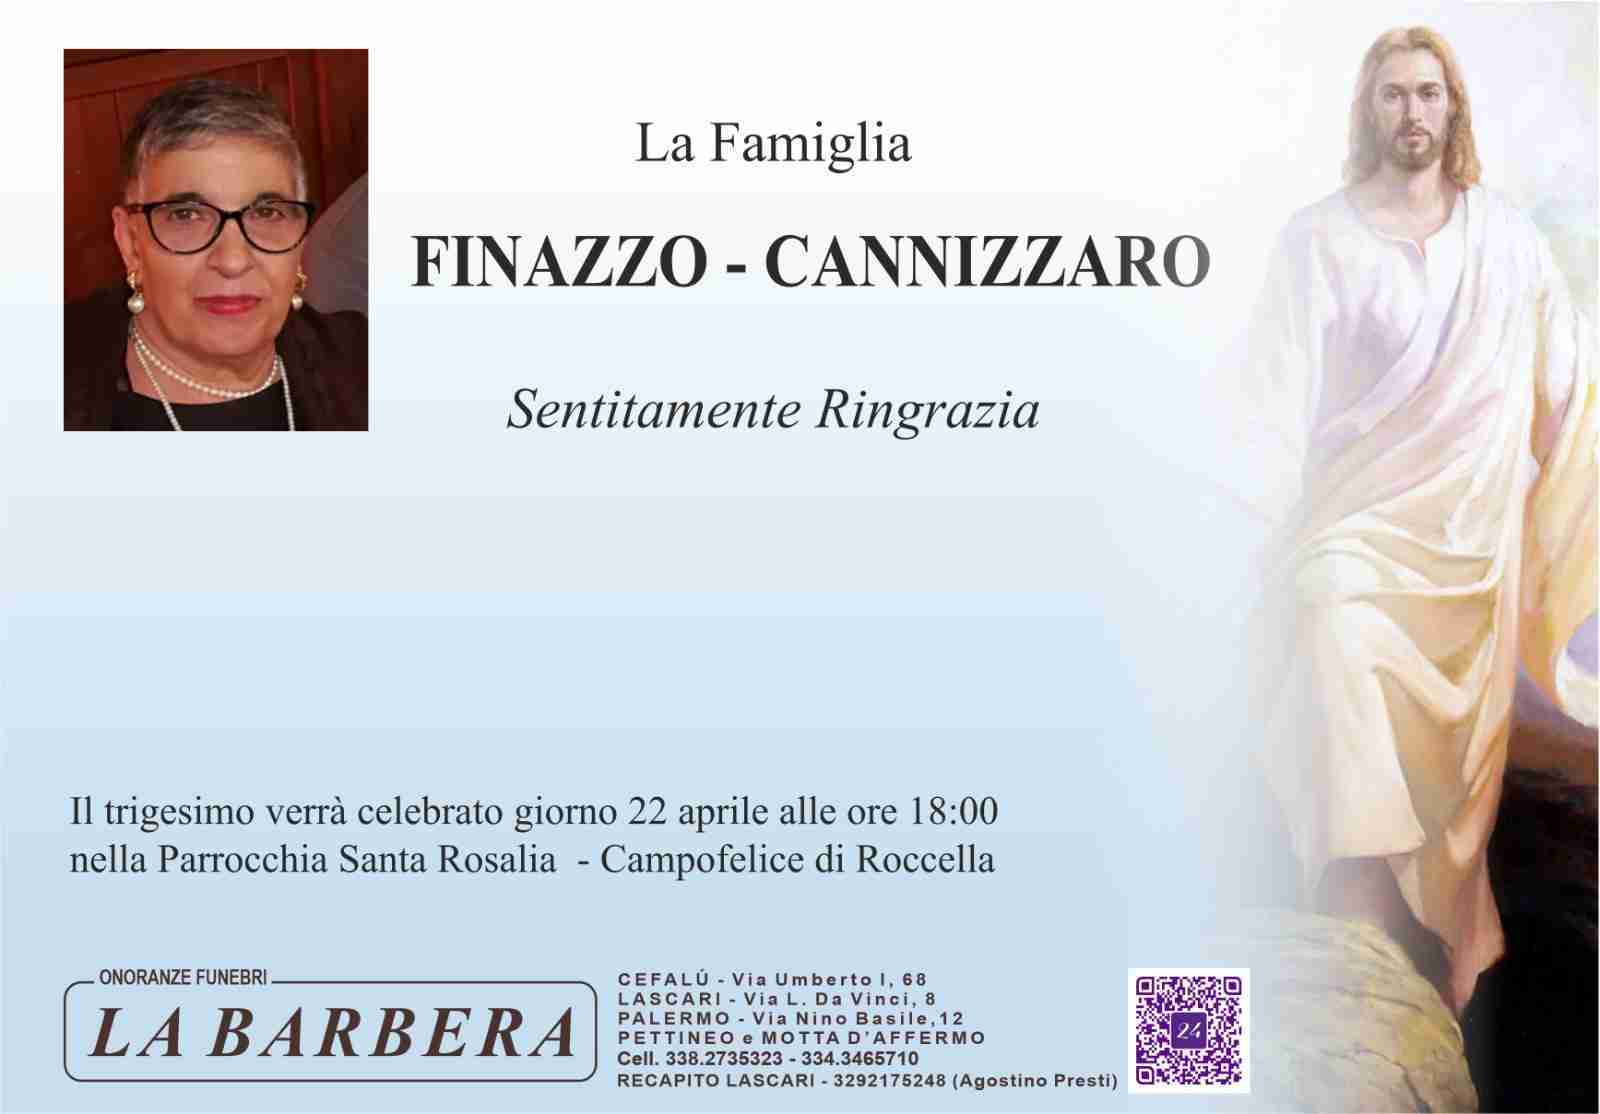 Concetta Cannizzaro